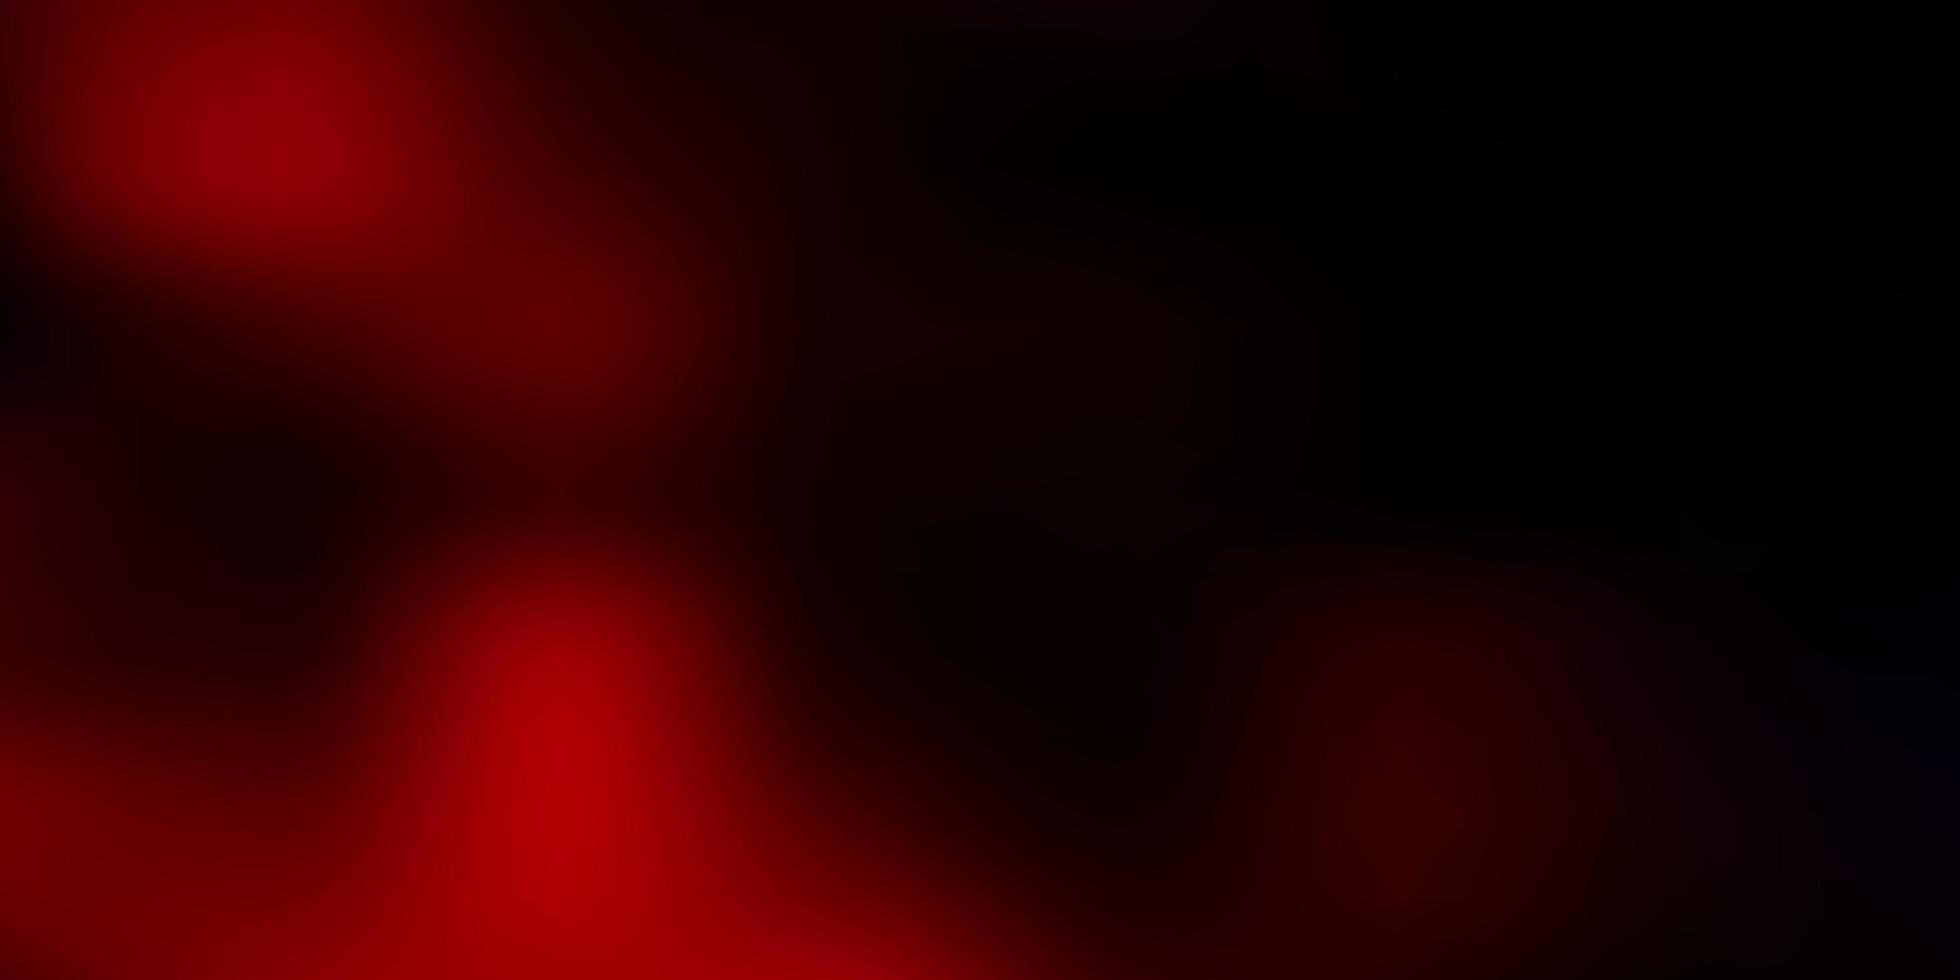 Dark red vector blurred background.